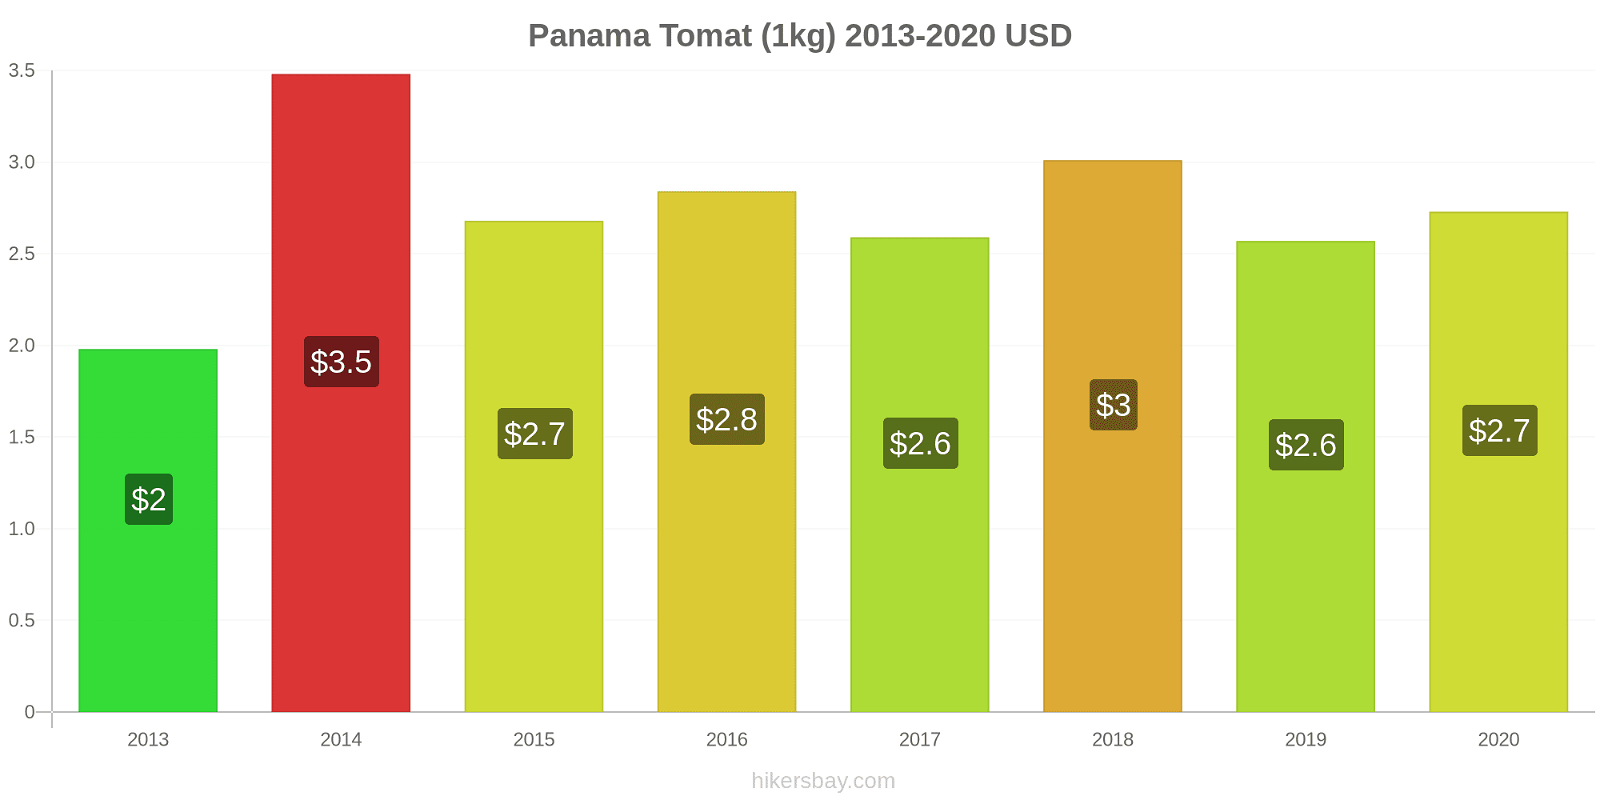 Panama perubahan harga Tomat (1kg) hikersbay.com